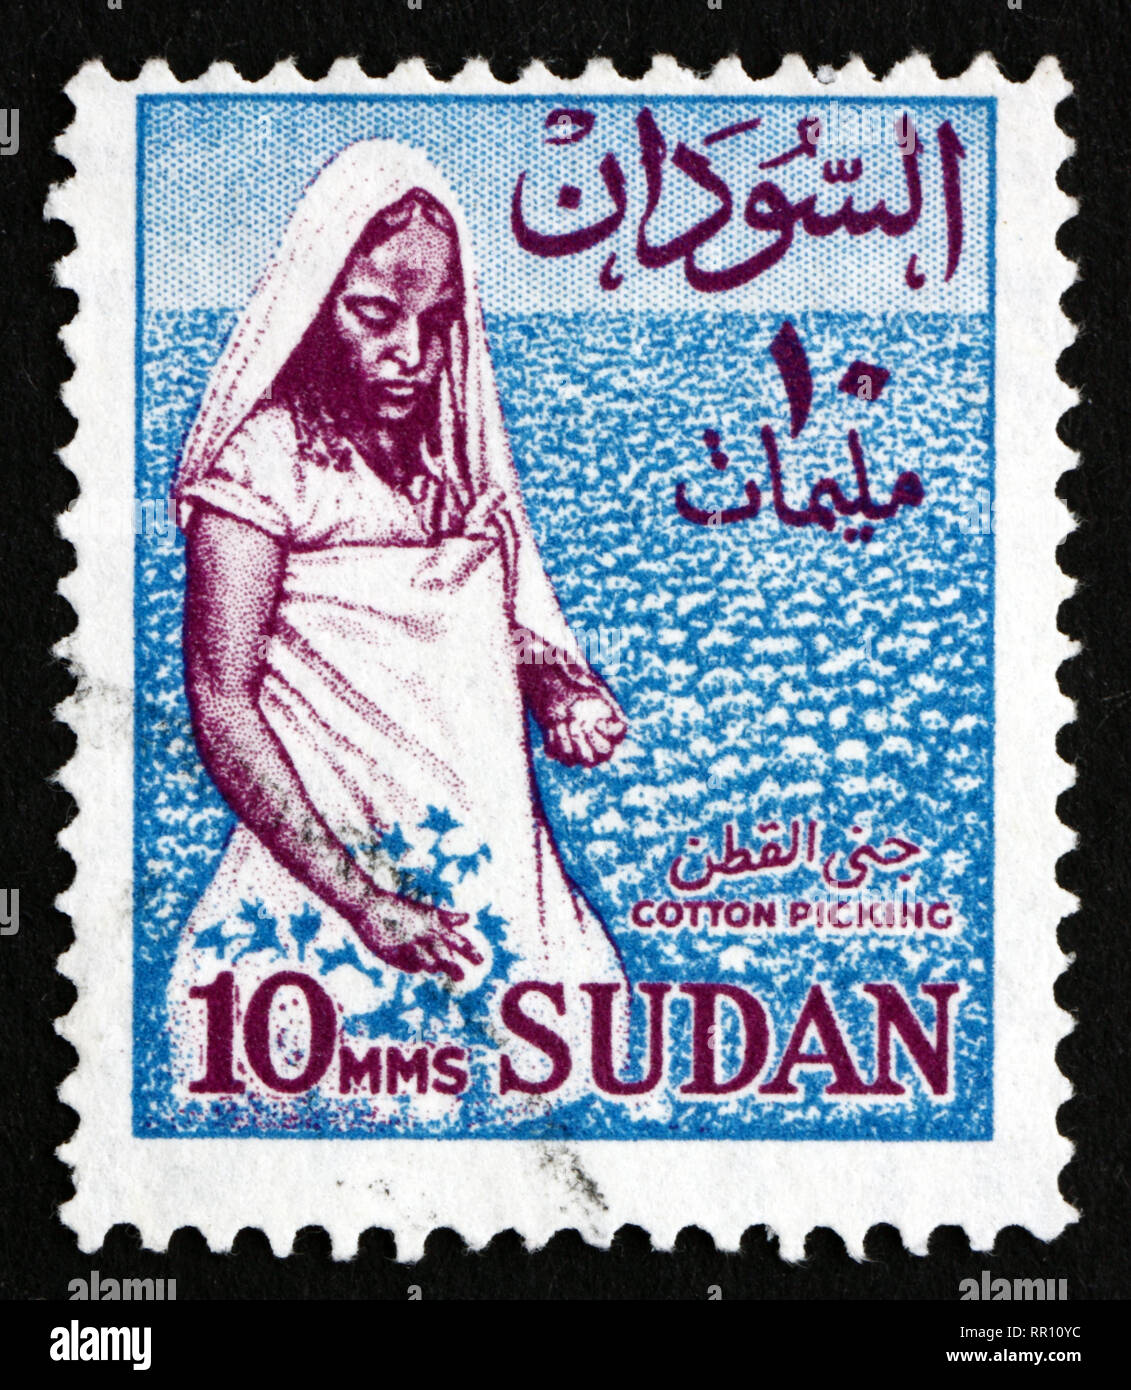 SUDAN - CIRCA 1962: a stamp printed in Sudan shows Cotton Picker, Cotton Cultivation, circa 1962 Stock Photo